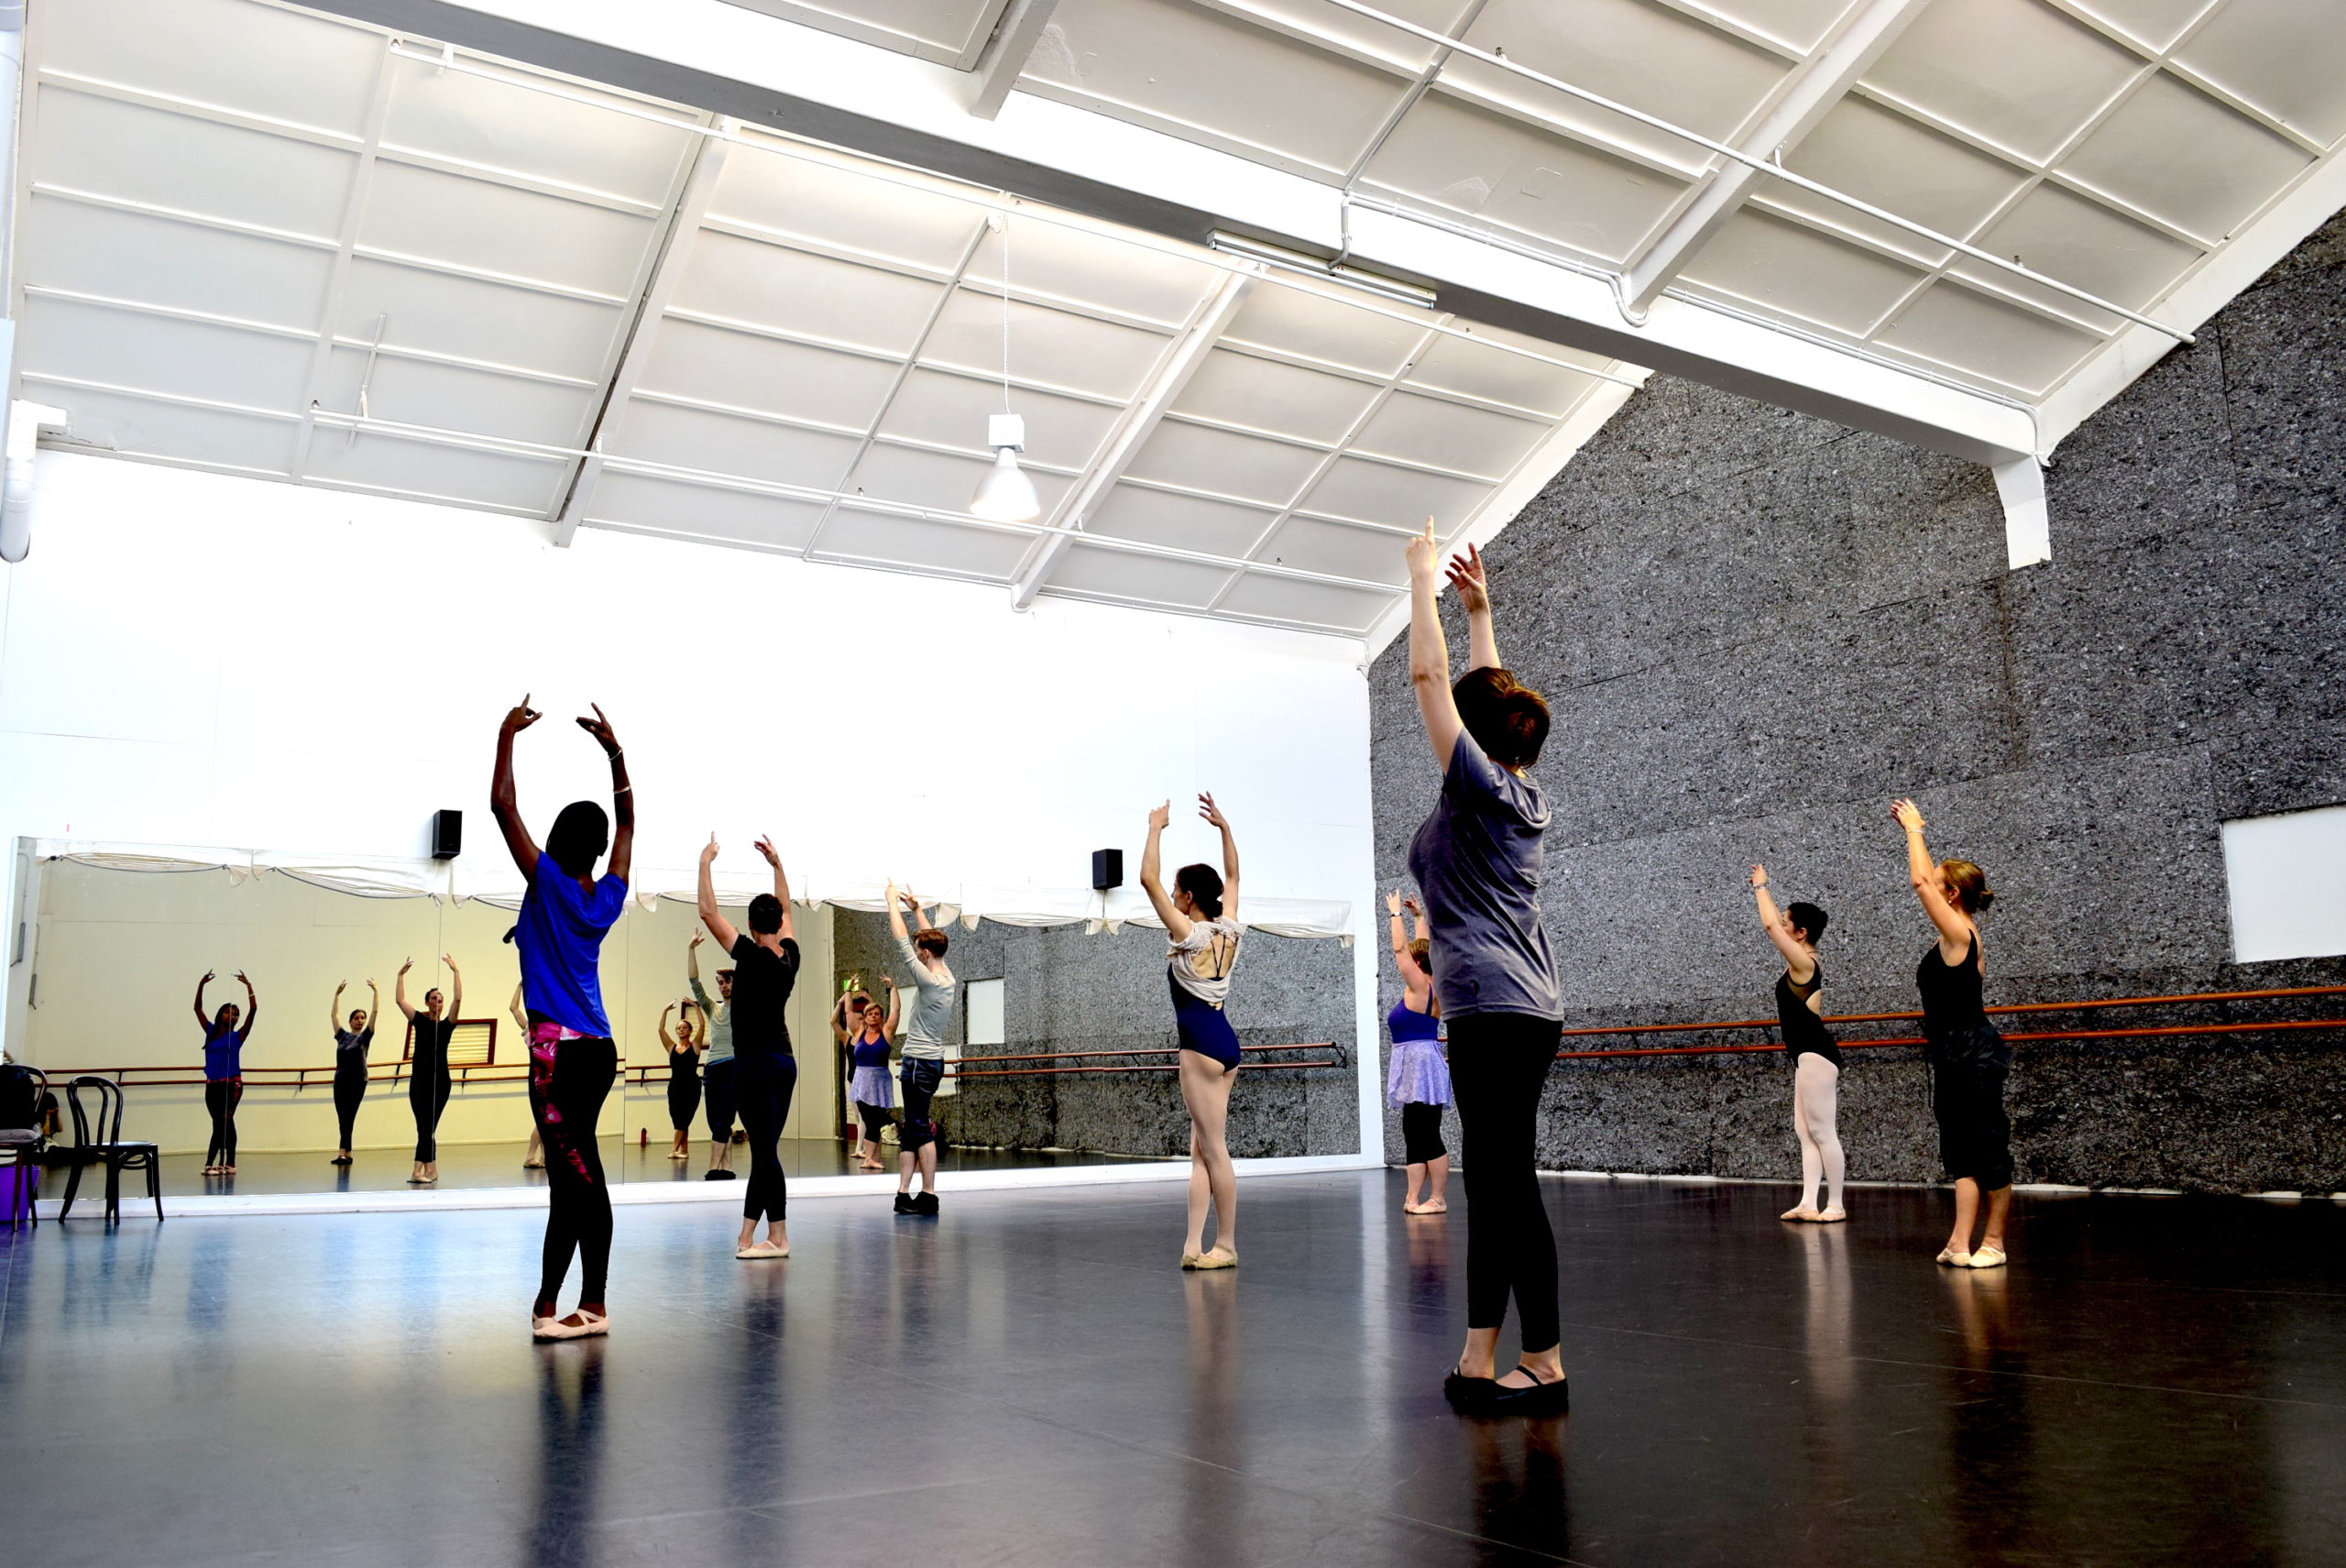 City Adult Ballet Classes in the Dance Studio